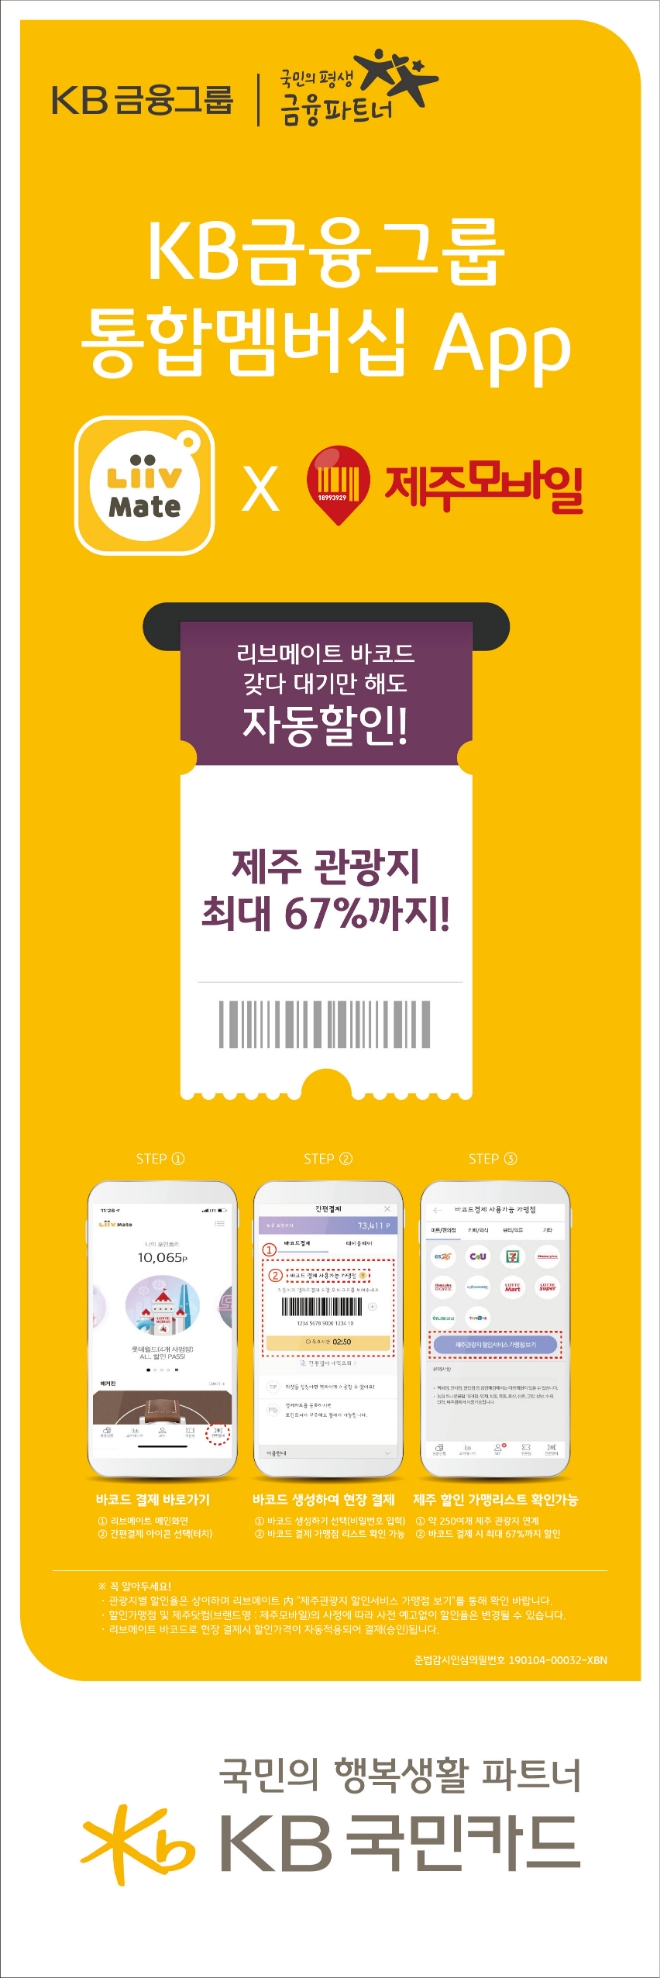 KB국민카드, 제주 관광지 할인 서비스 제공